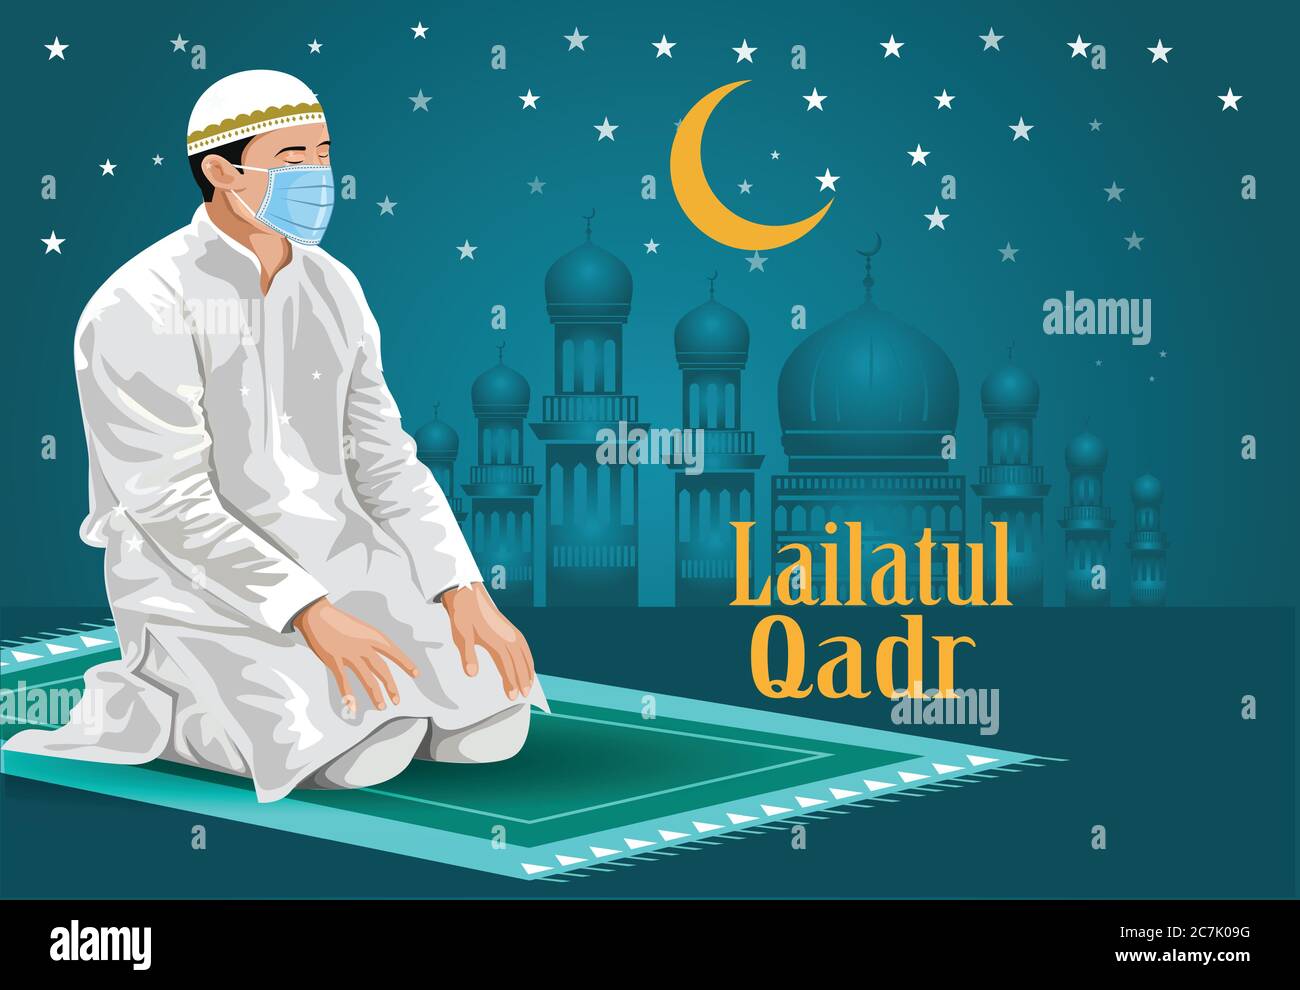 Mann betet auf den Knien, mit geschlossenen Augen. Tragen Sie chirurgische Maske, Ramadan Kareem, Lailatul Qadr Typografie Grußkarte schönes Design mit Schilloute Stock Vektor